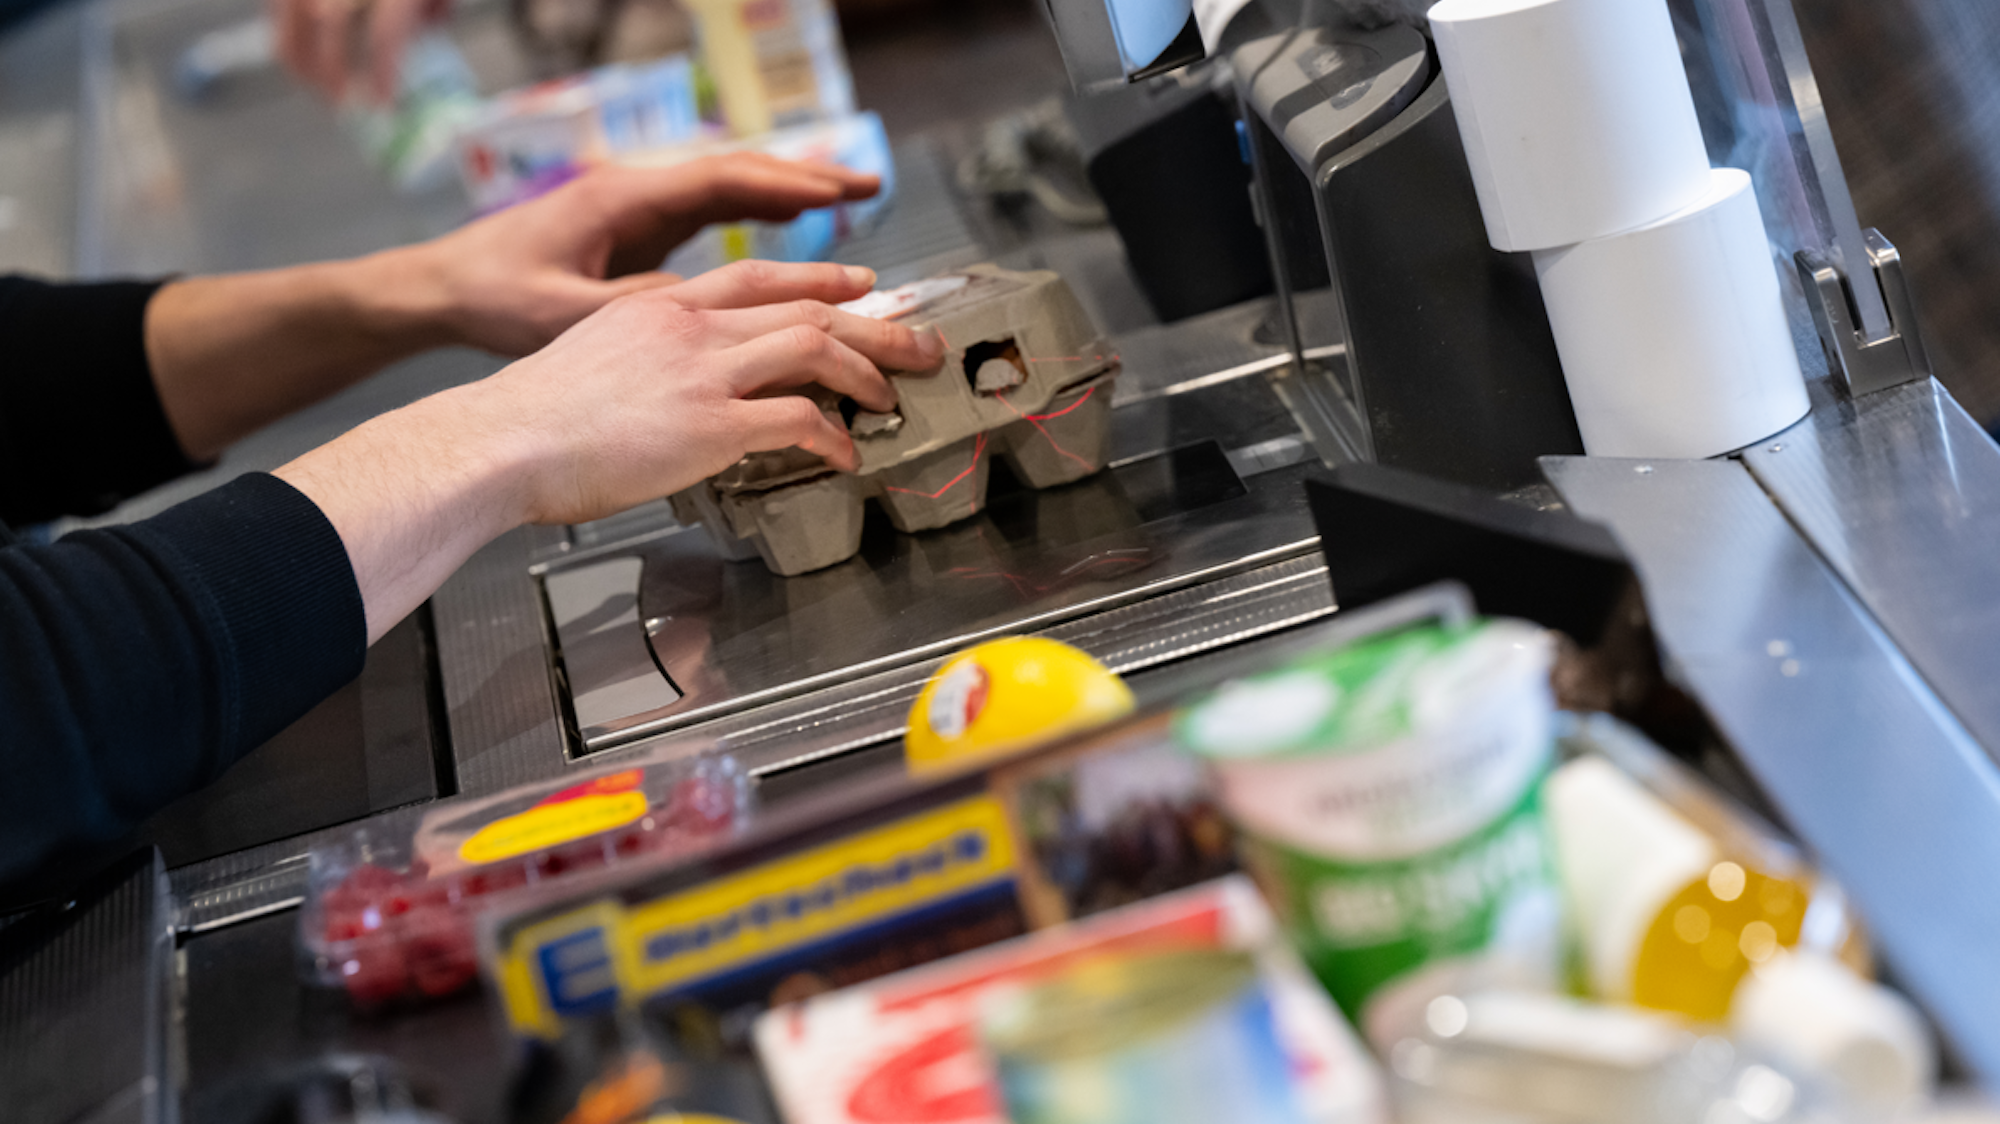 Ein Kassierer scannt in einem Supermarkt an der Kasse die Produkte.